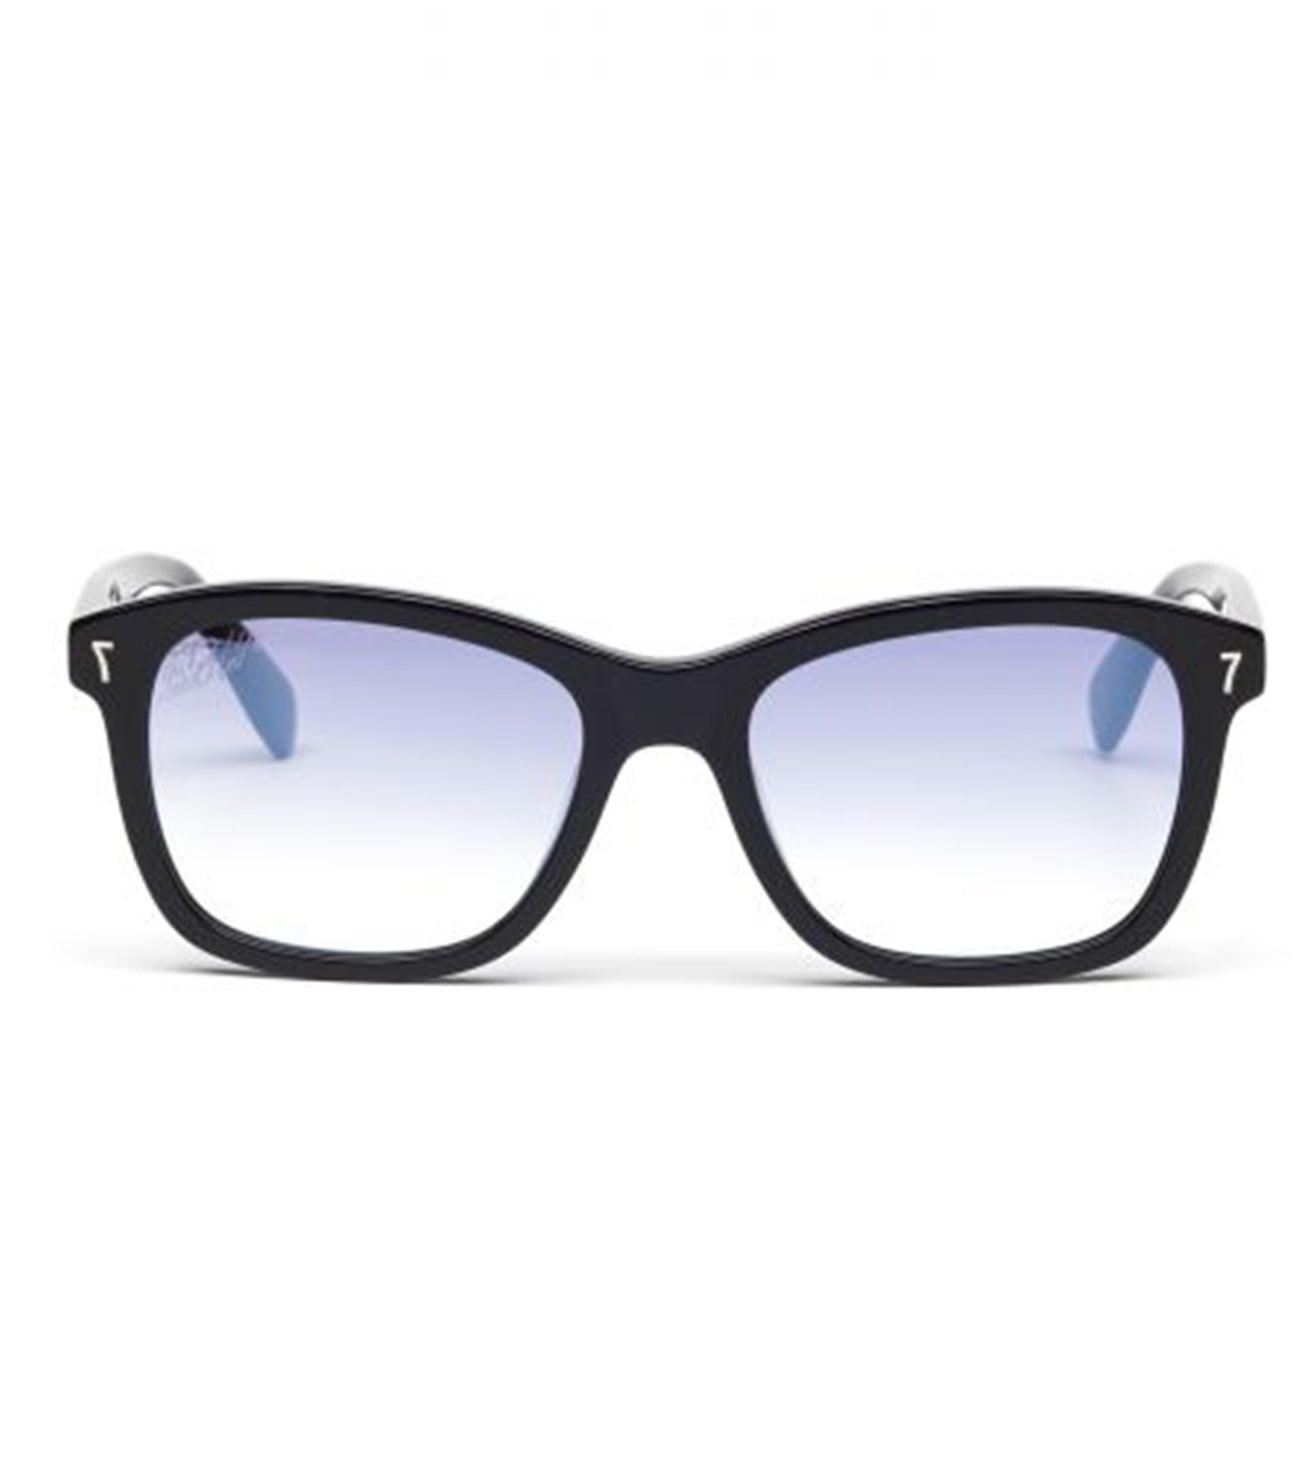 CR7 Unisex Blue Square Sunglasses